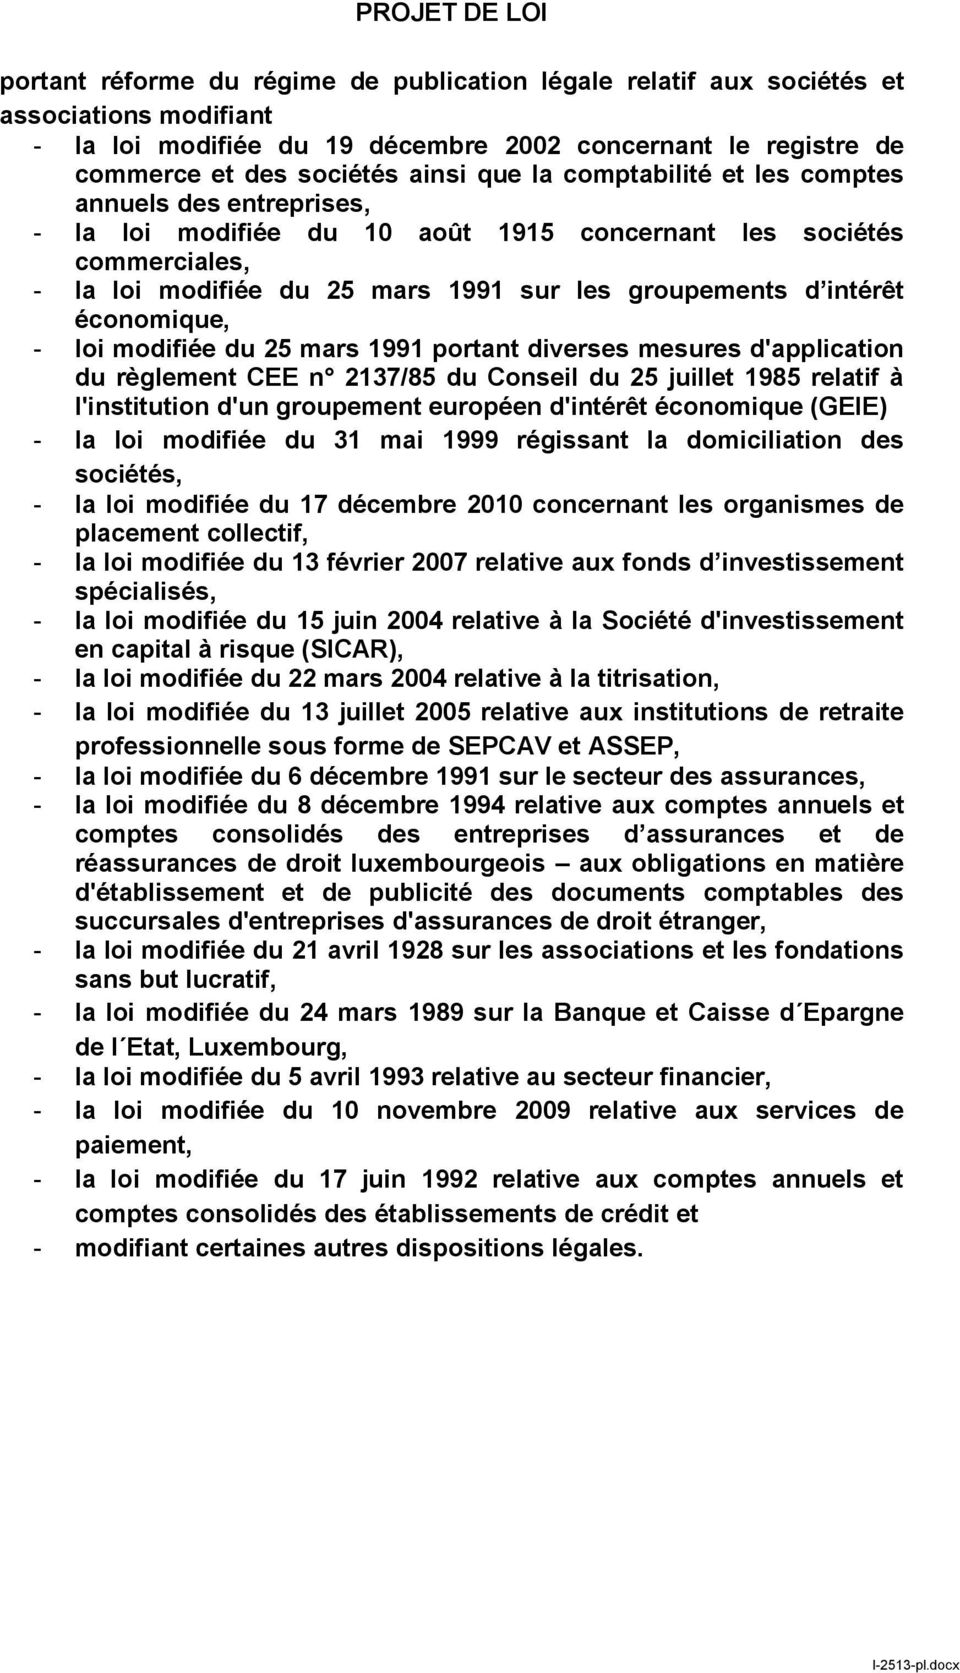 intérêt économique, - loi modifiée du 25 mars 1991 portant diverses mesures d'application du règlement CEE n 2137/85 du Conseil du 25 juillet 1985 relatif à l'institution d'un groupement européen